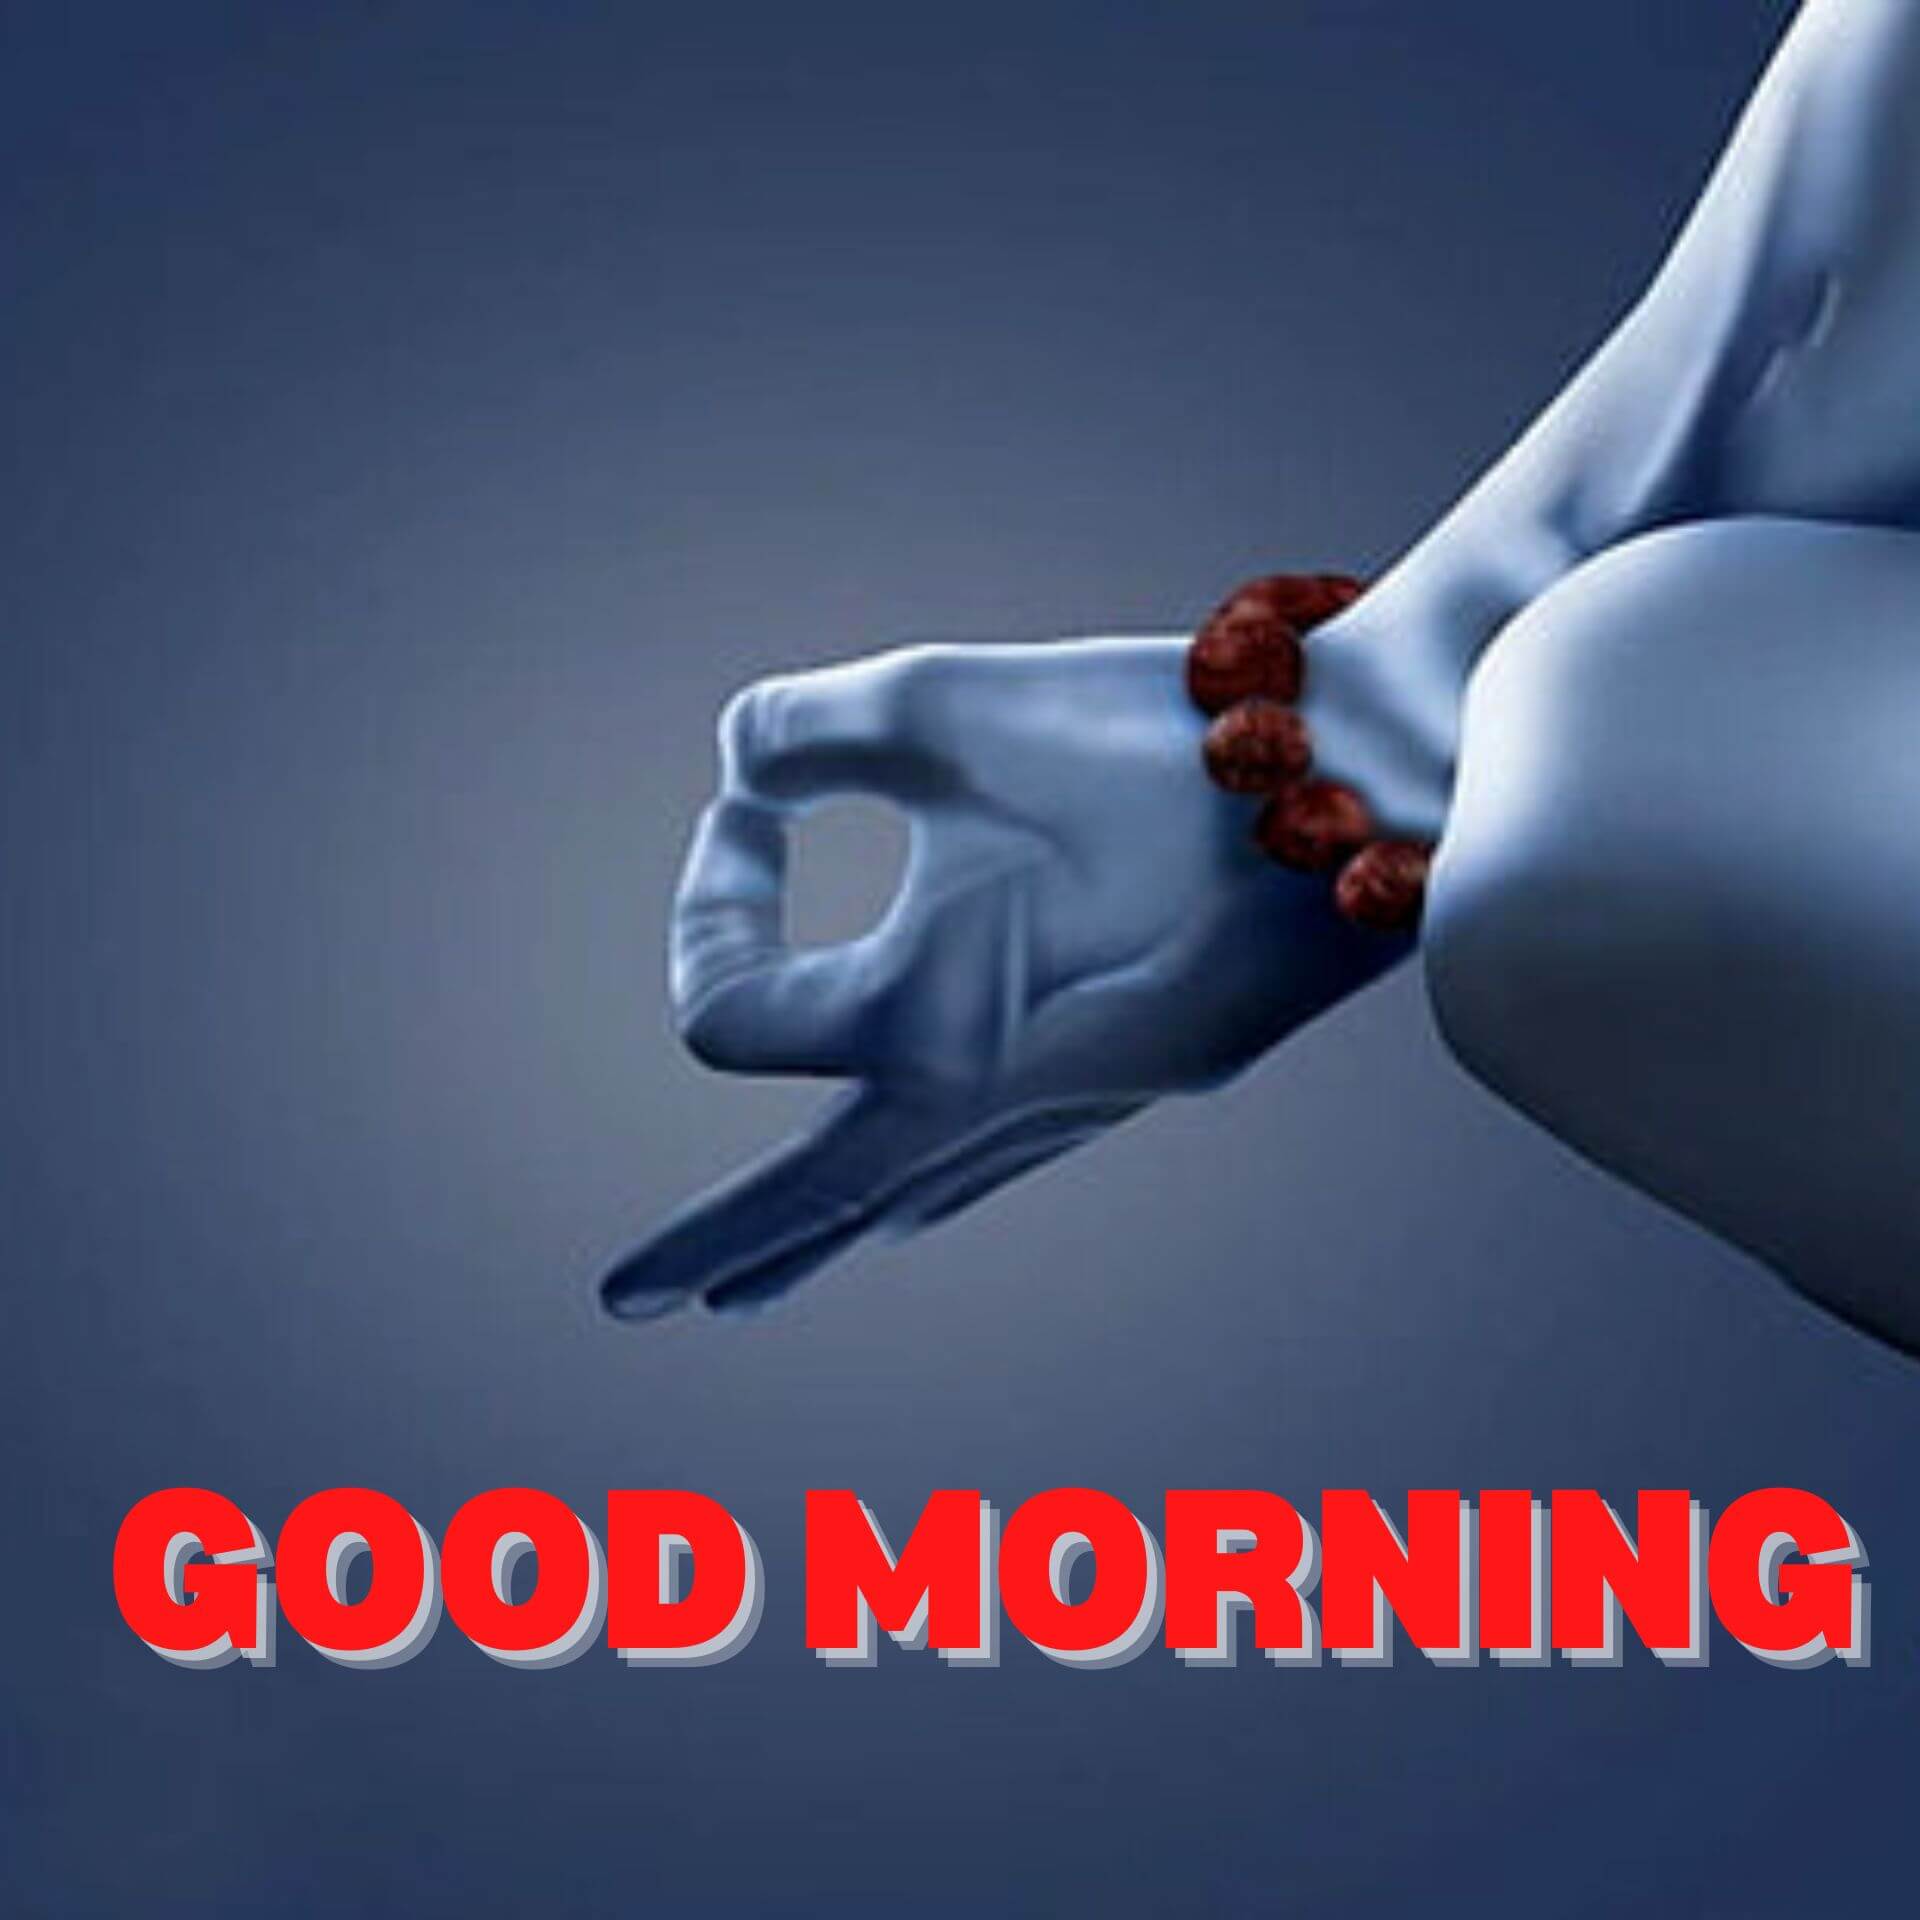 good morning image bhakti